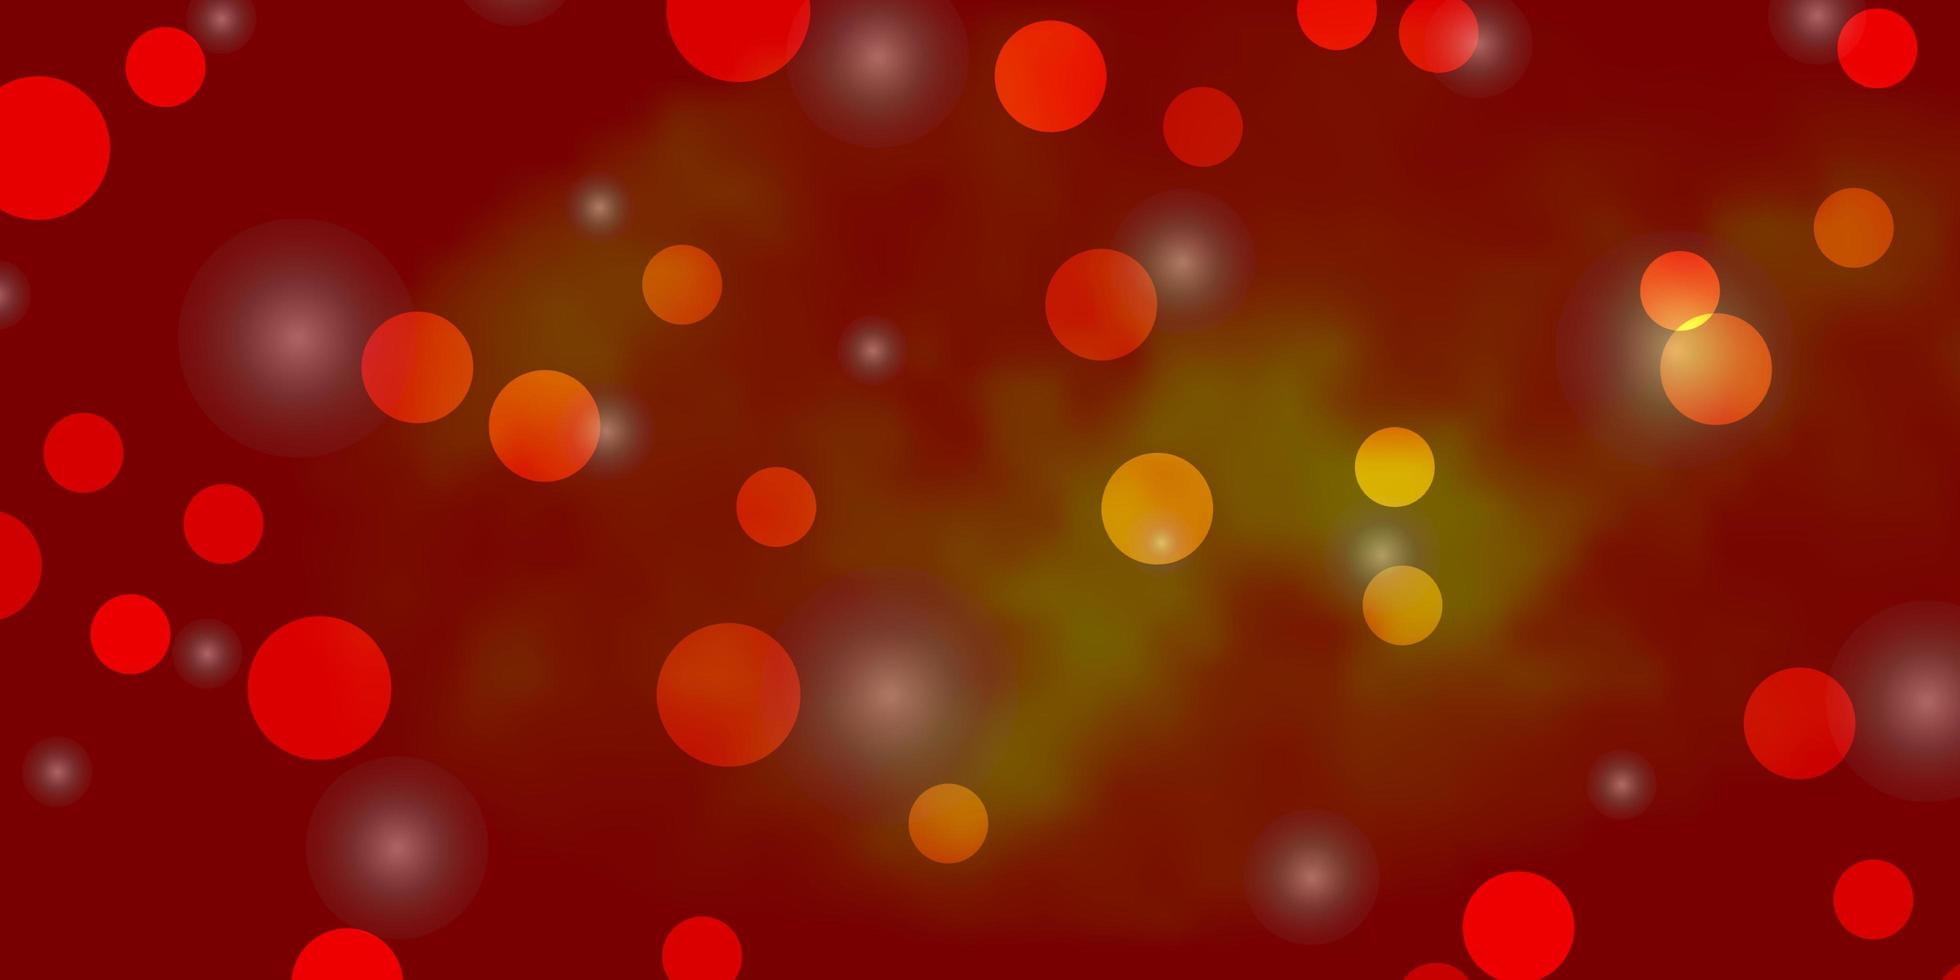 toile de fond de vecteur orange clair avec des cercles, des étoiles.